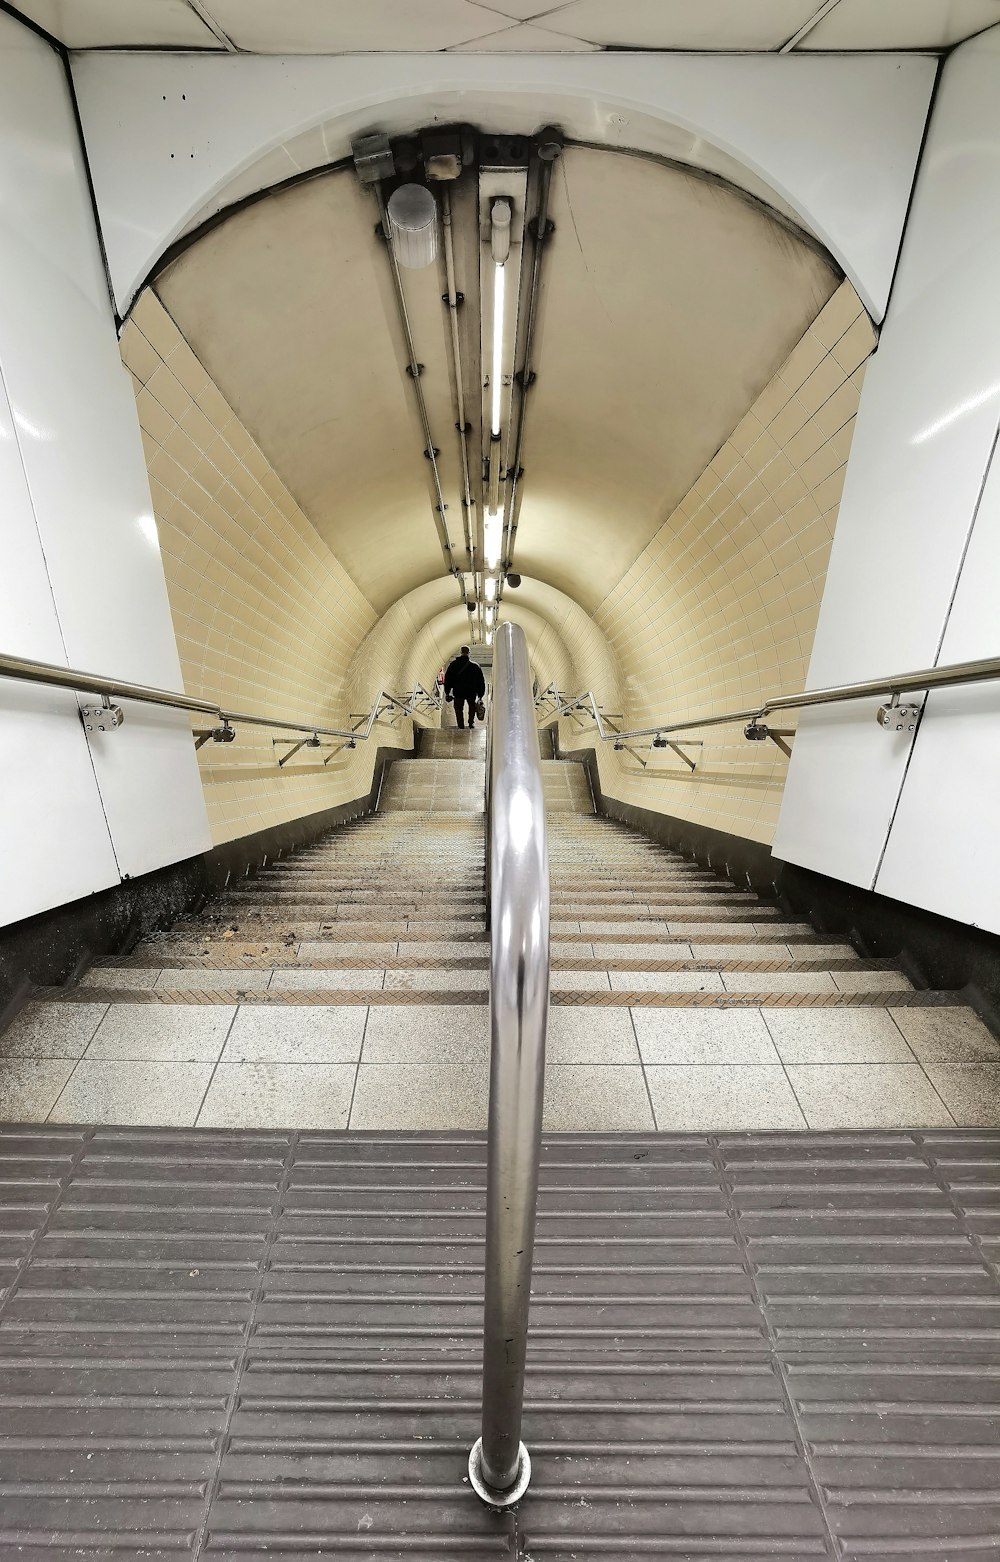 un escalator dans une station de métro avec carrelage au sol